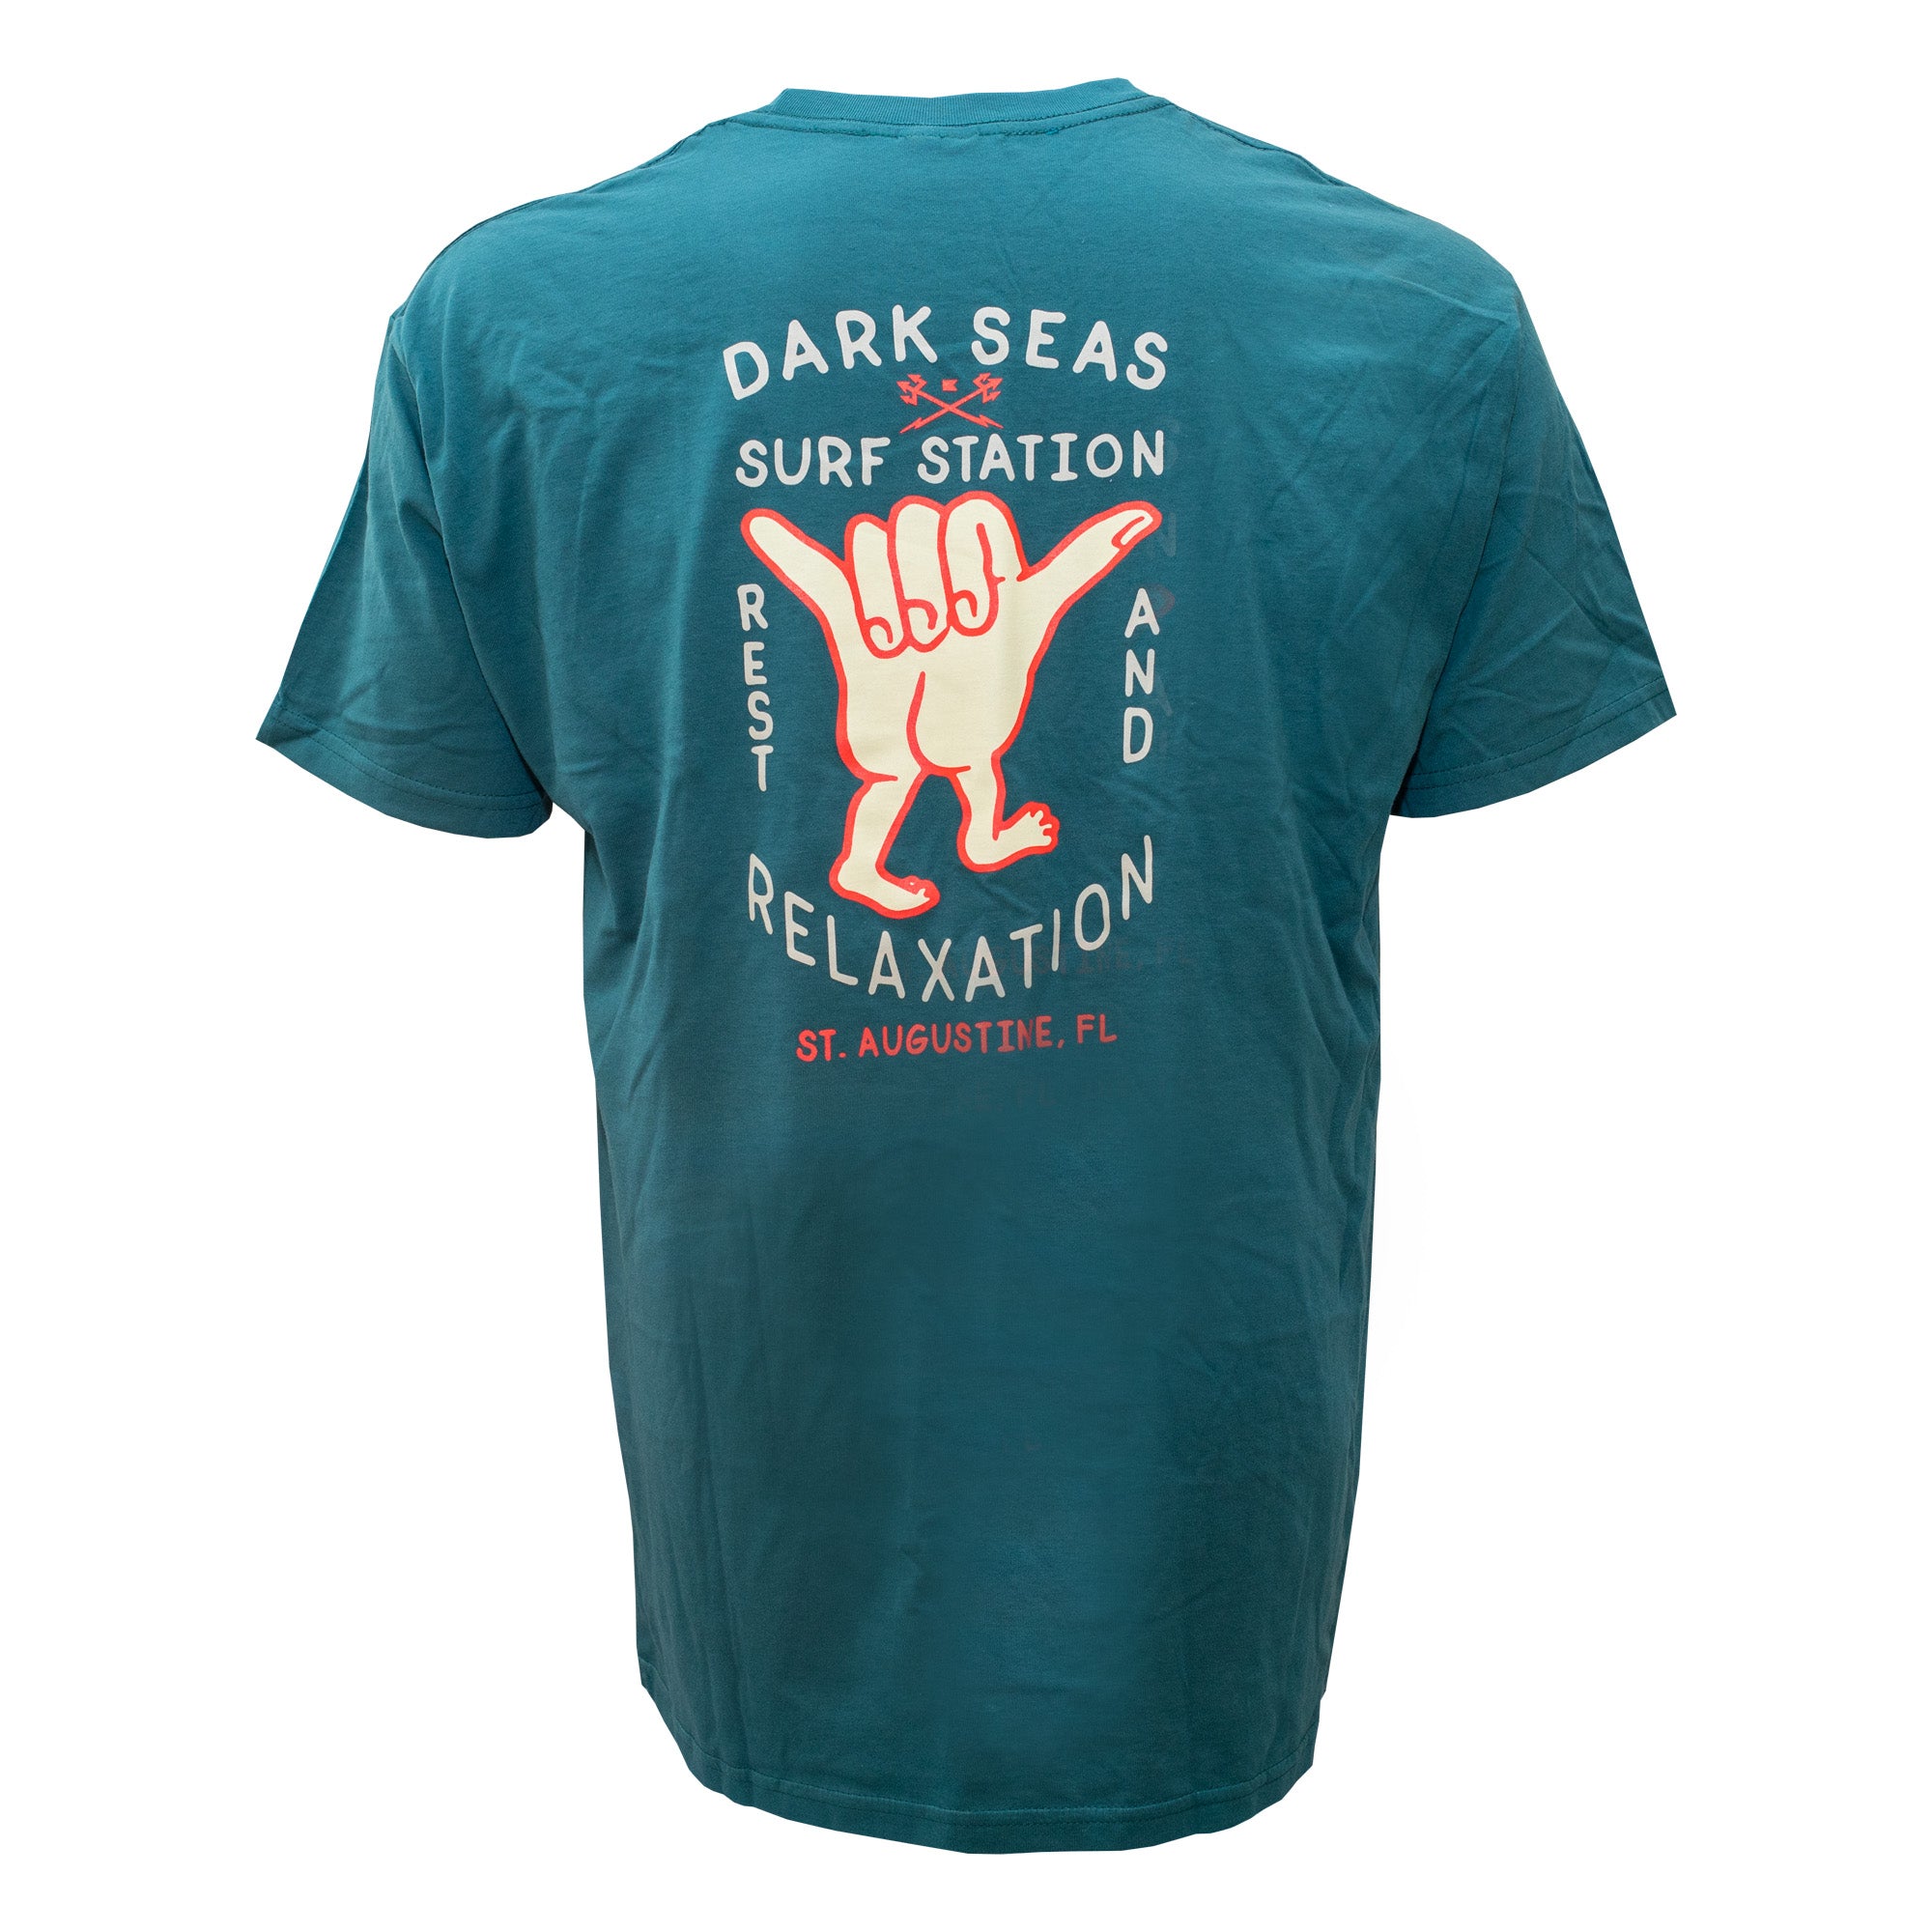 Surf Station x Dark Seas Hand Signals Men's S/S T-Shirt